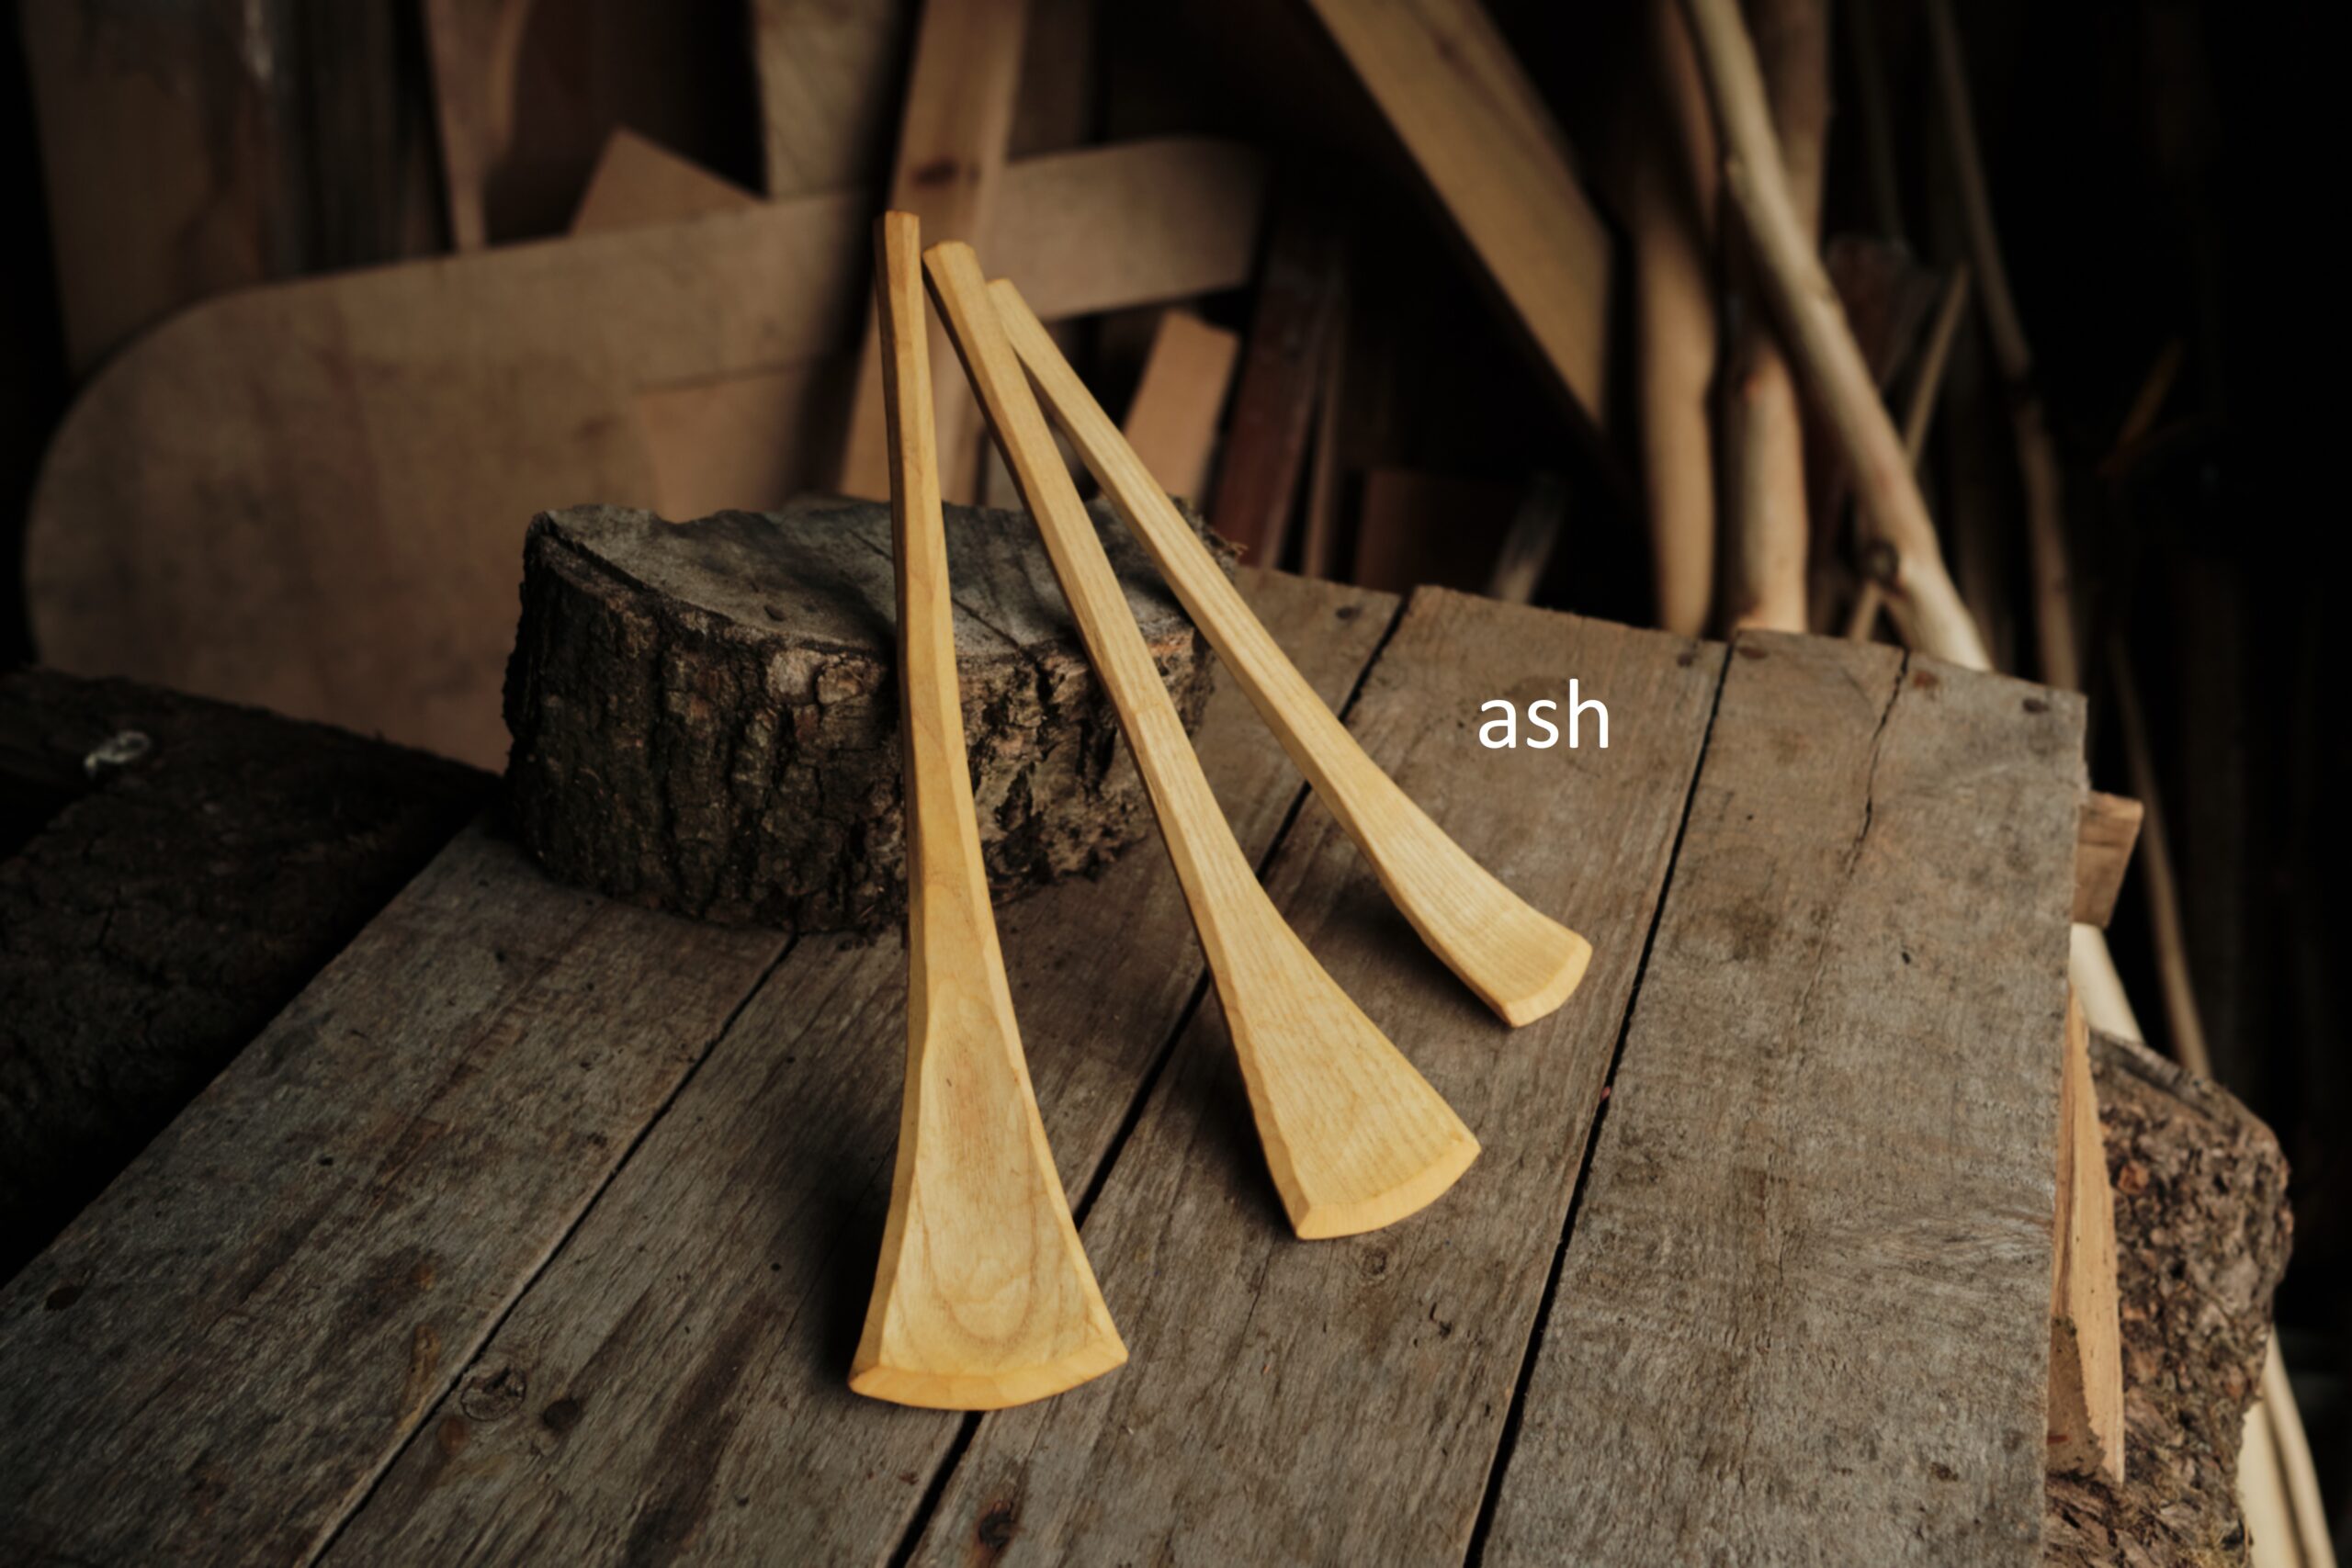 Ash spatulas